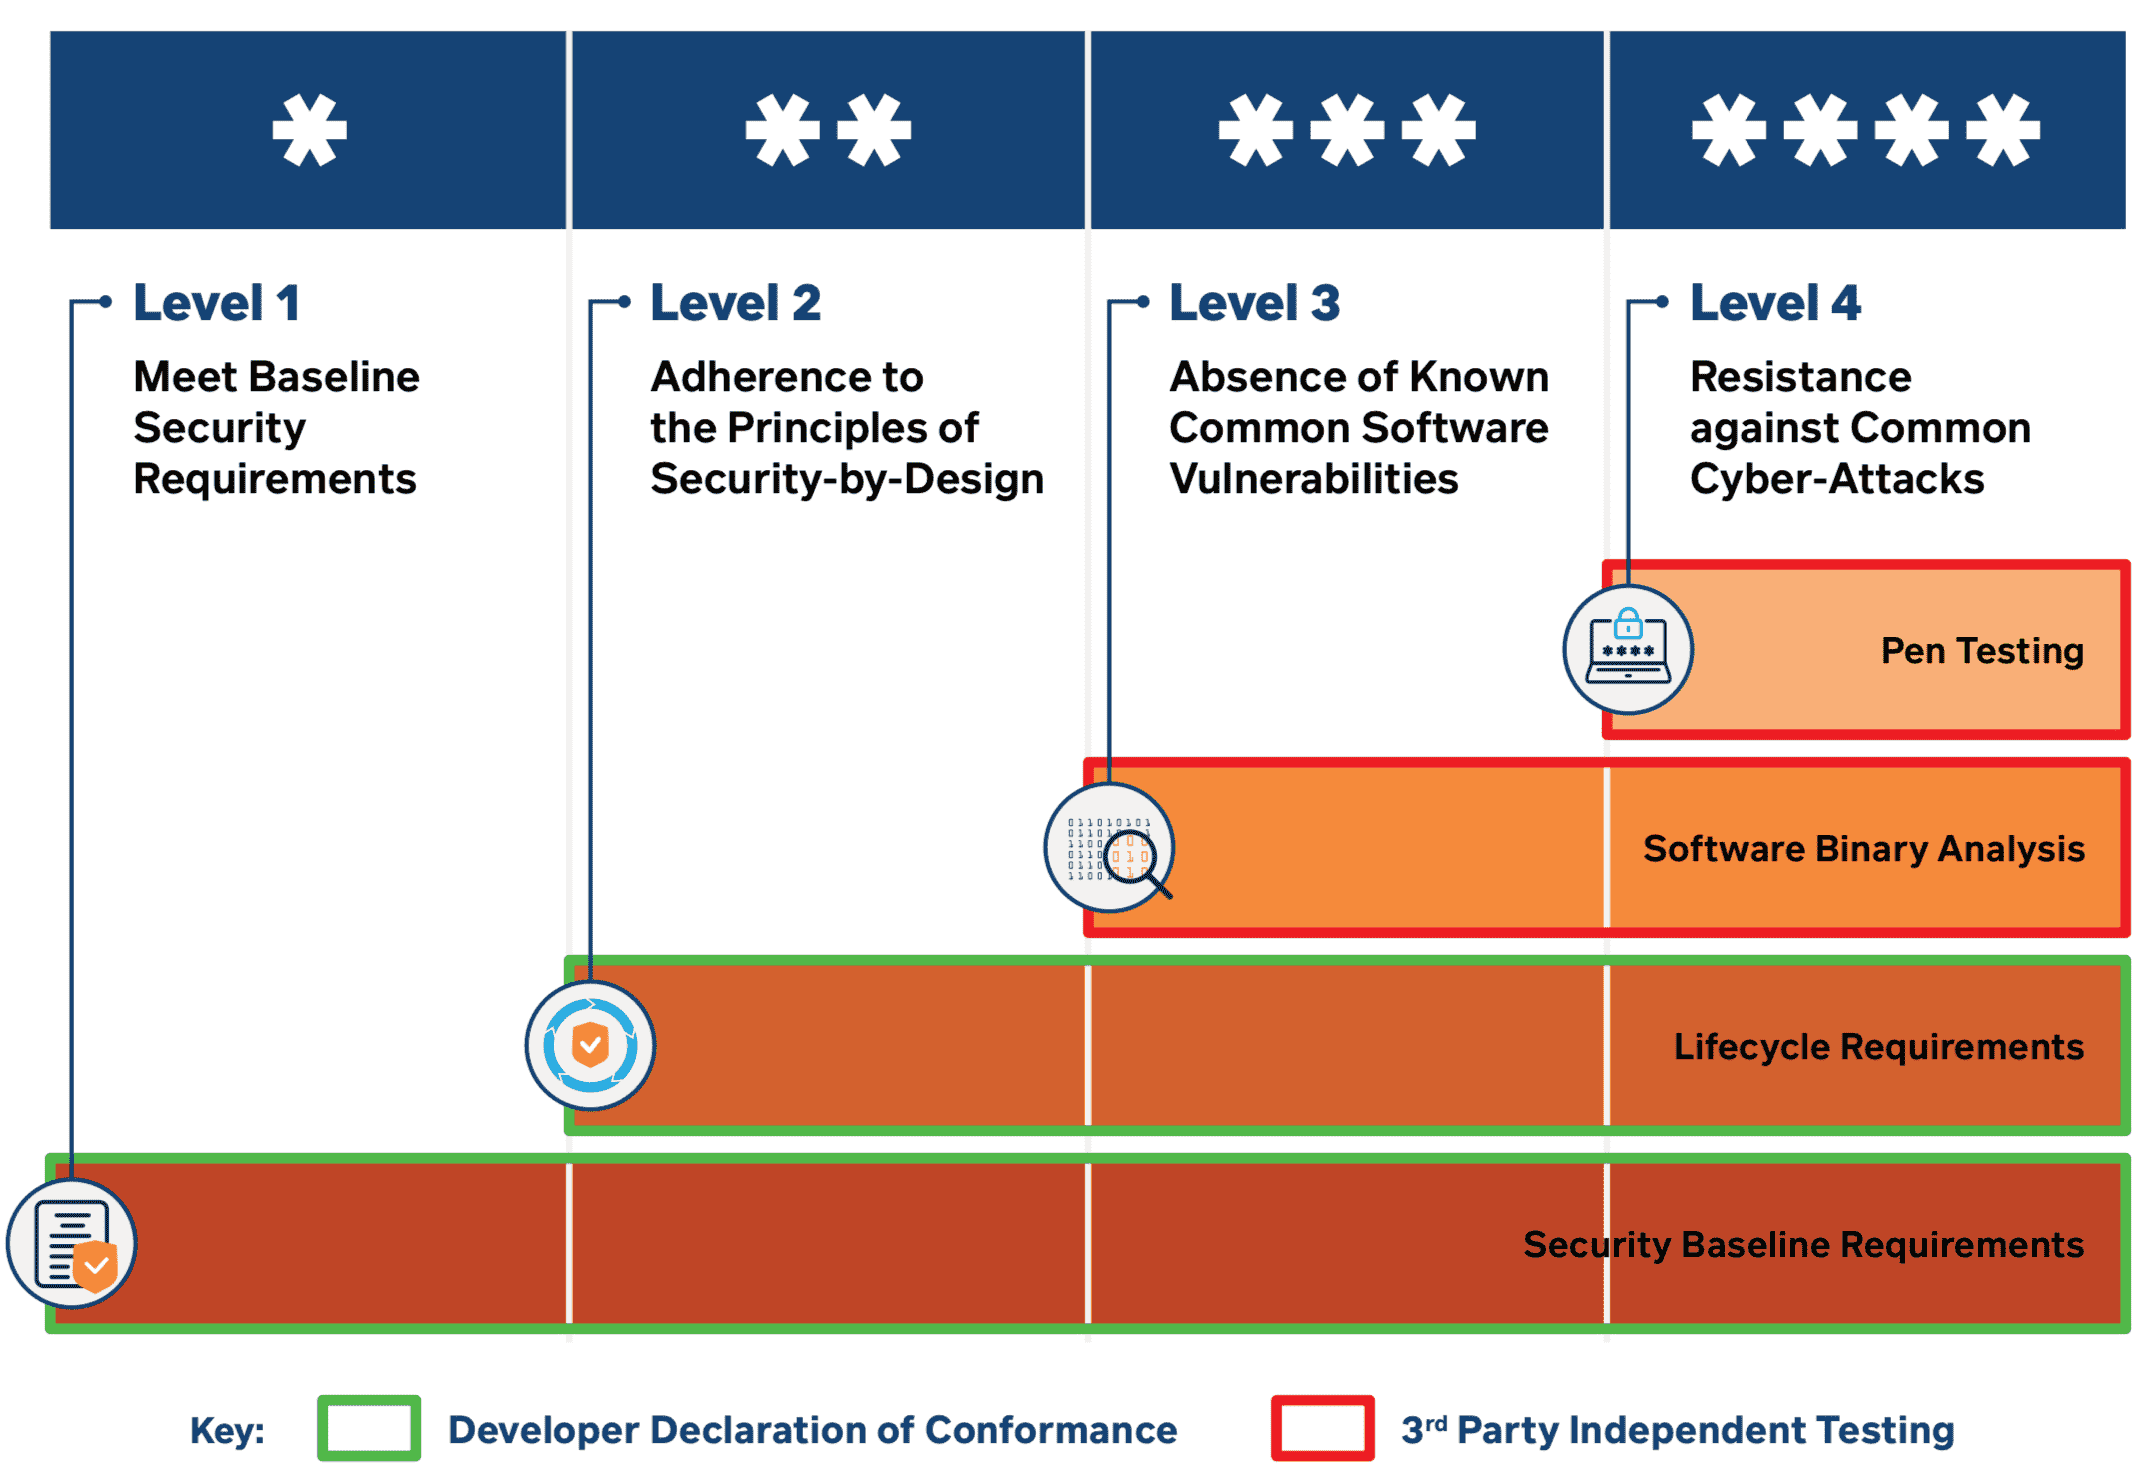 Le système d'étiquetage de la cybersécurité à Singapour, où les appareils grand public reçoivent l'un des quatre scores basés sur les pratiques de sécurité.